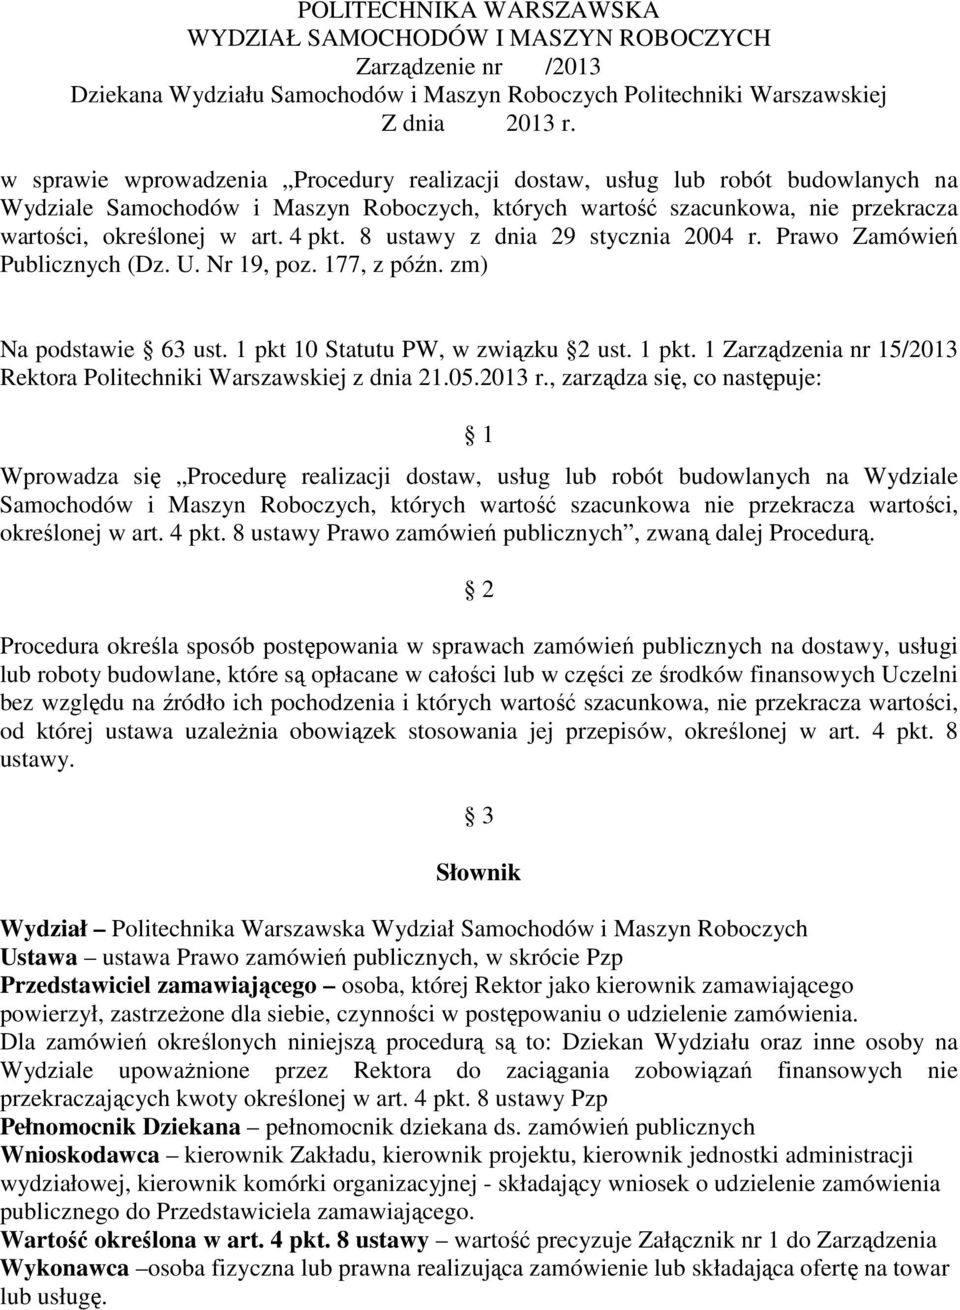 8 ustawy z dnia 29 stycznia 2004 r. Prawo Zamówień Publicznych (Dz. U. Nr 19, poz. 177, z późn. zm) Na podstawie 63 ust. 1 pkt 10 Statutu PW, w związku 2 ust. 1 pkt. 1 Zarządzenia nr 15/2013 Rektora Politechniki Warszawskiej z dnia 21.